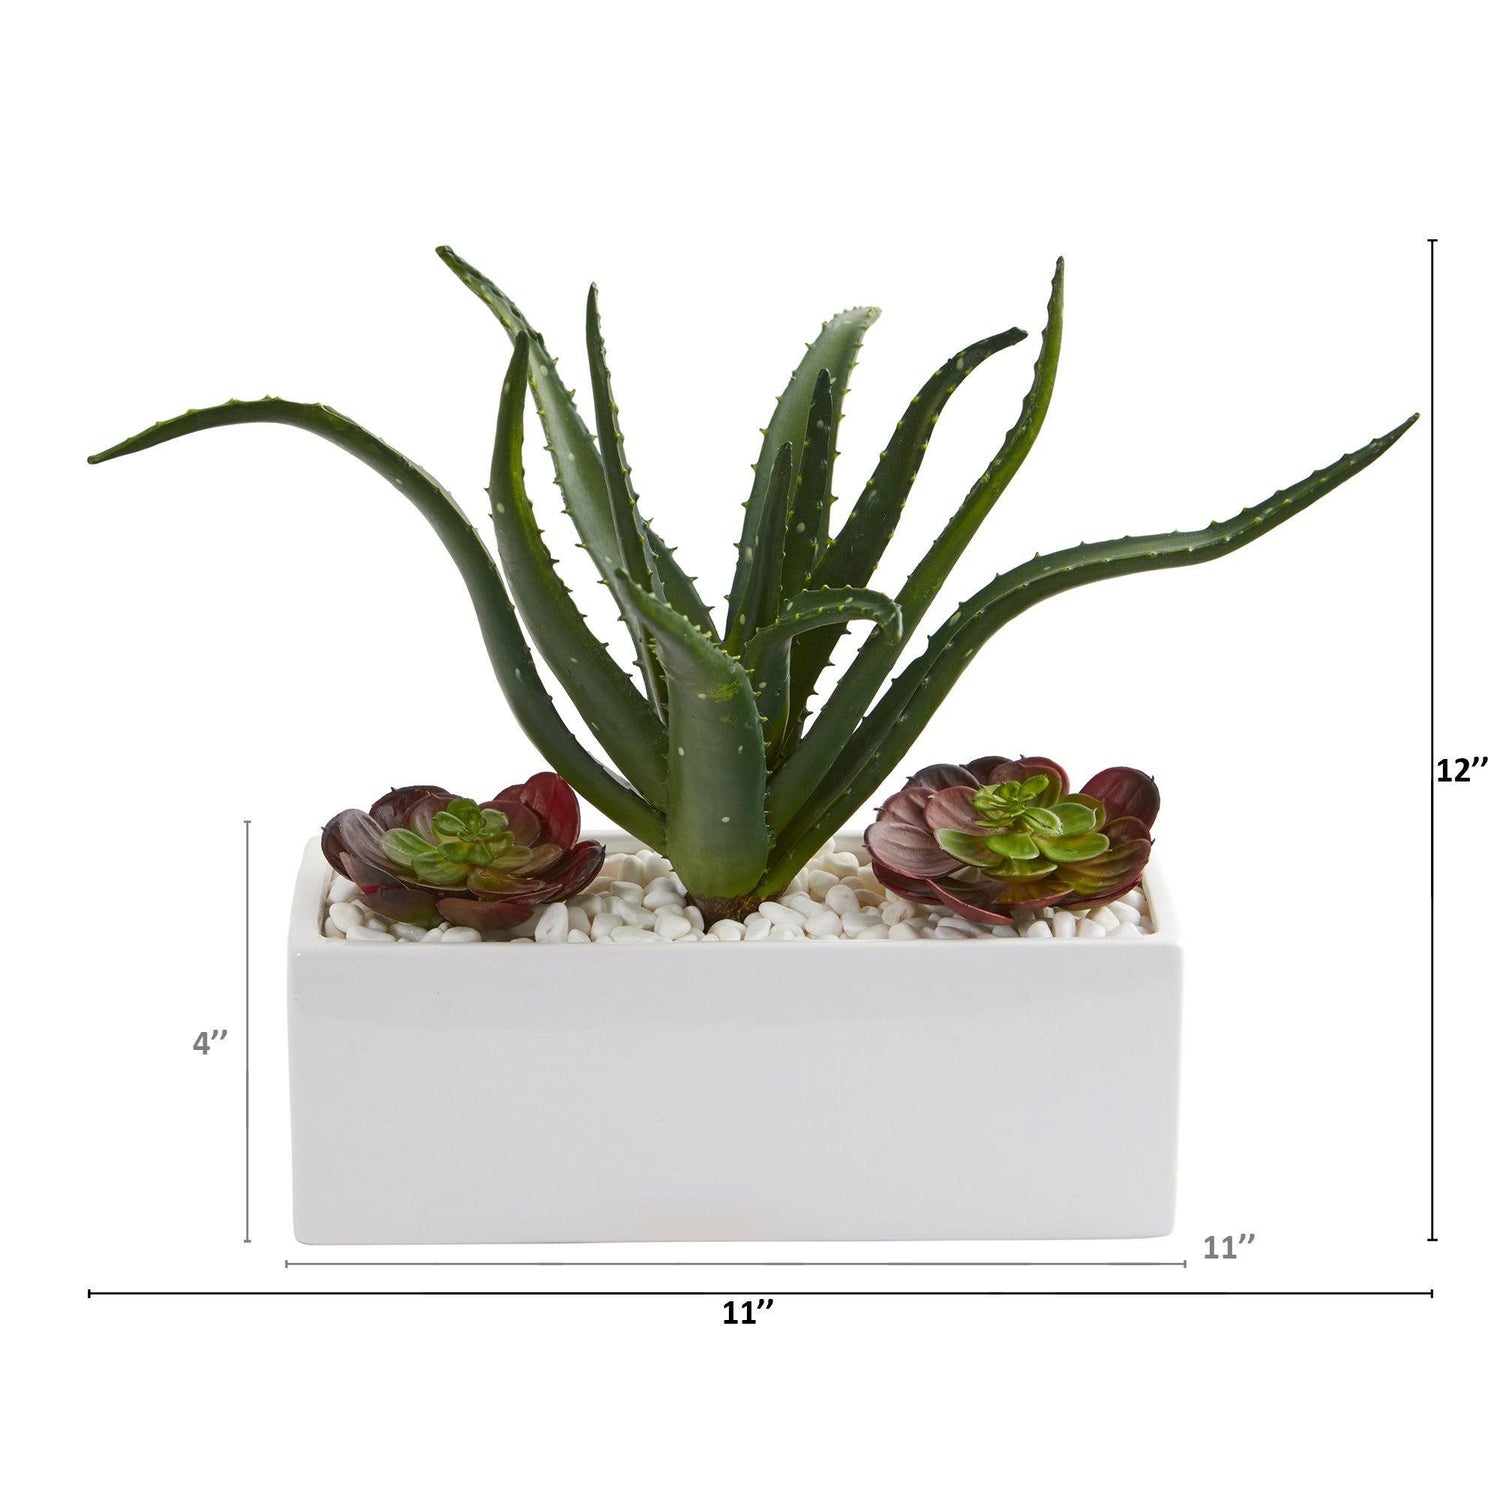 12” Aloe and Echeveria Succulent Artificial Plant in White Planter